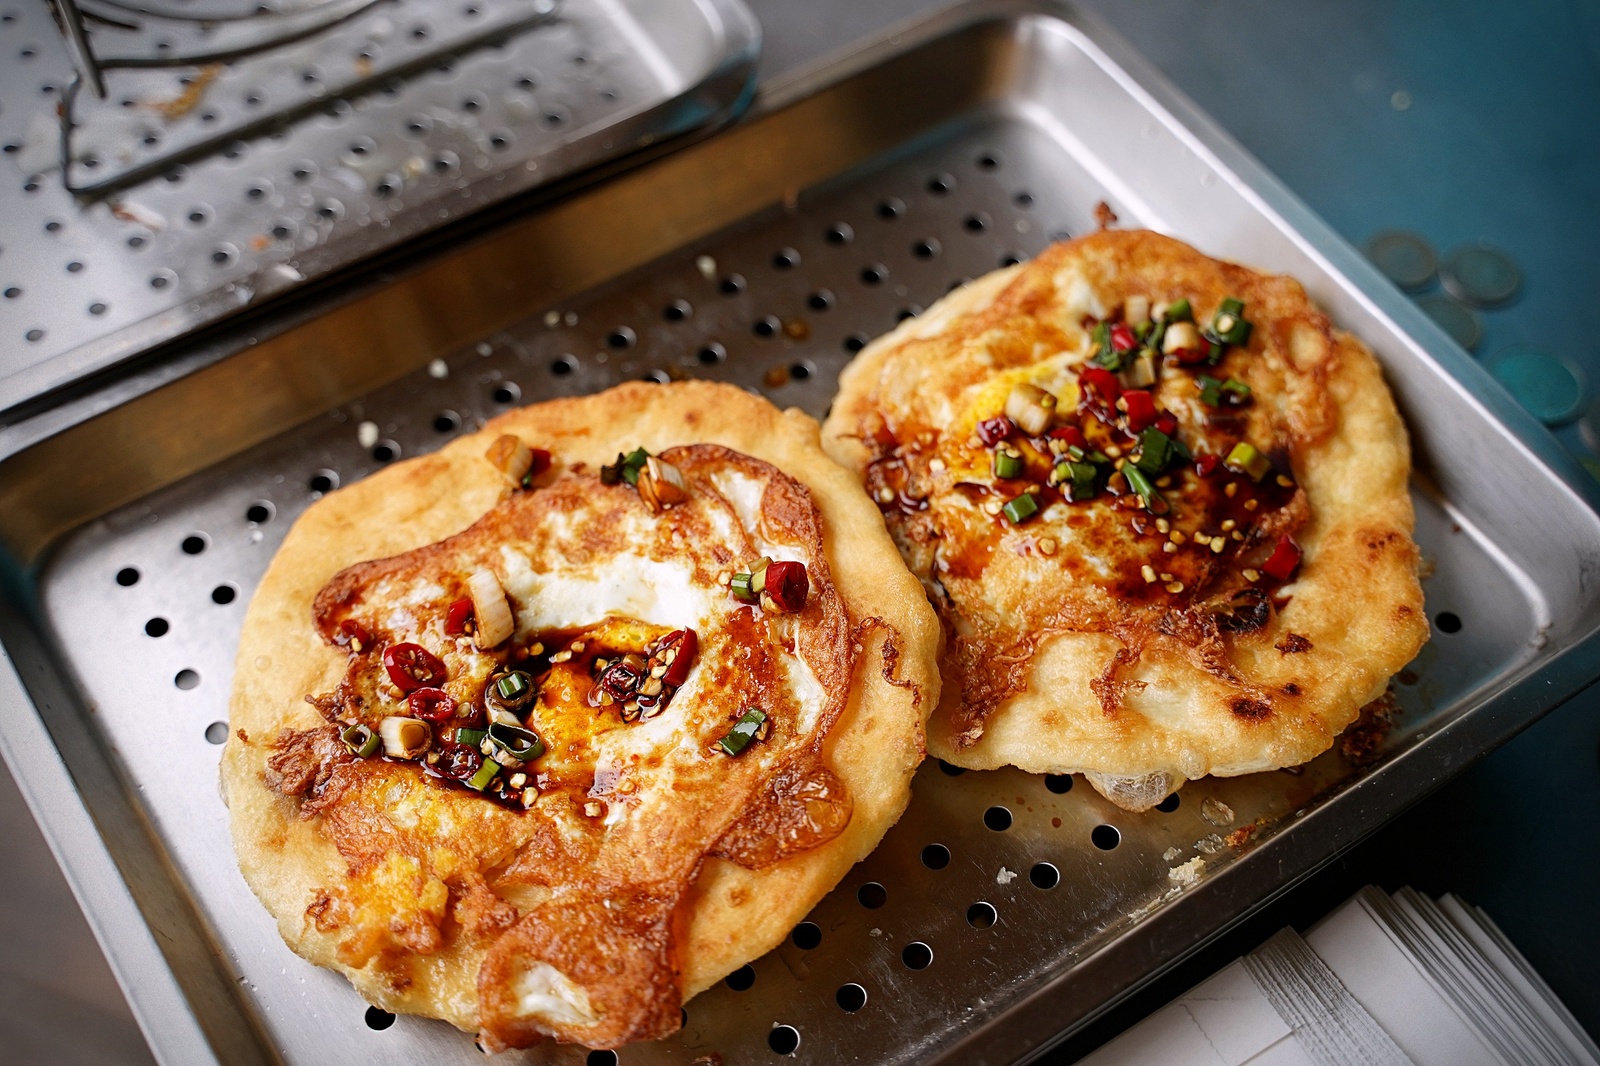 澎湖美食「老李胡椒餅」用老麵發酵吃起來就是不一樣